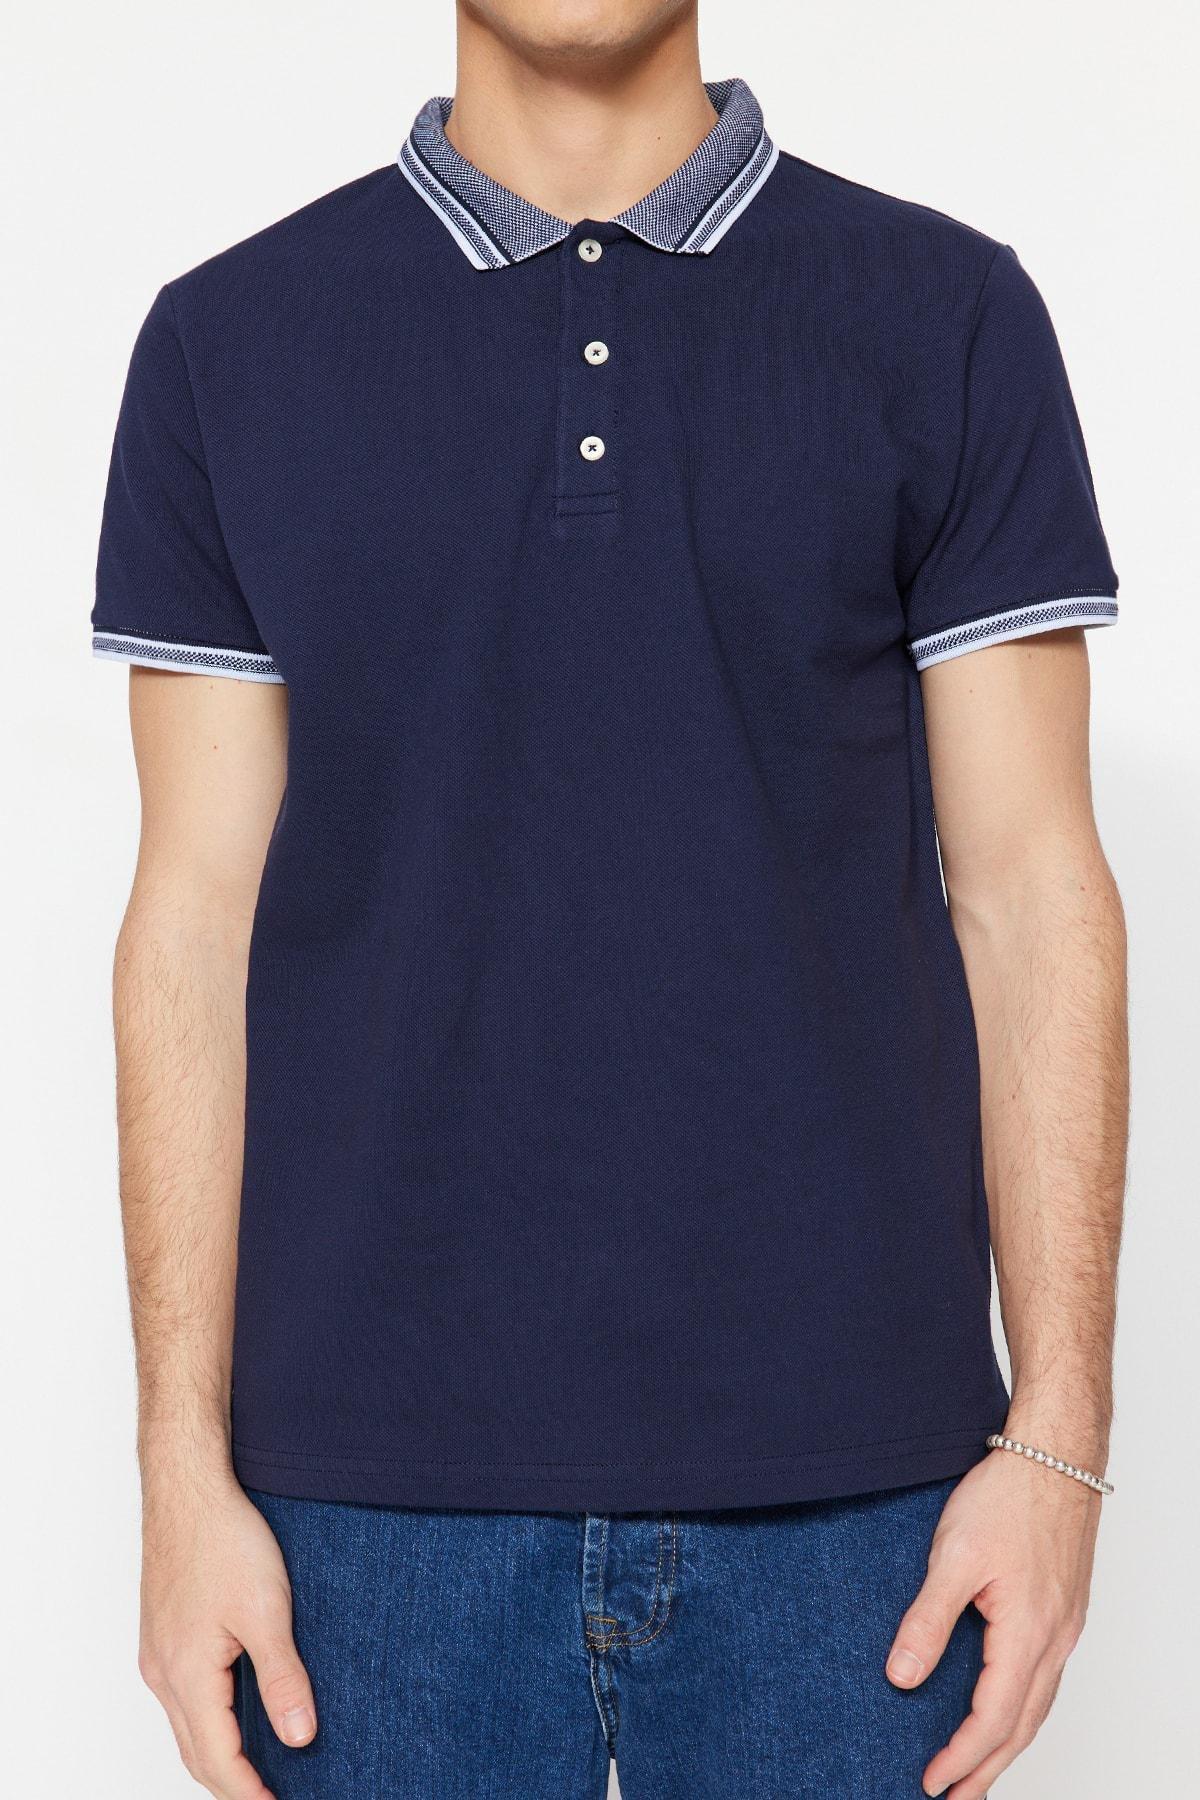 Trendyol - Navy Polo T-Shirt